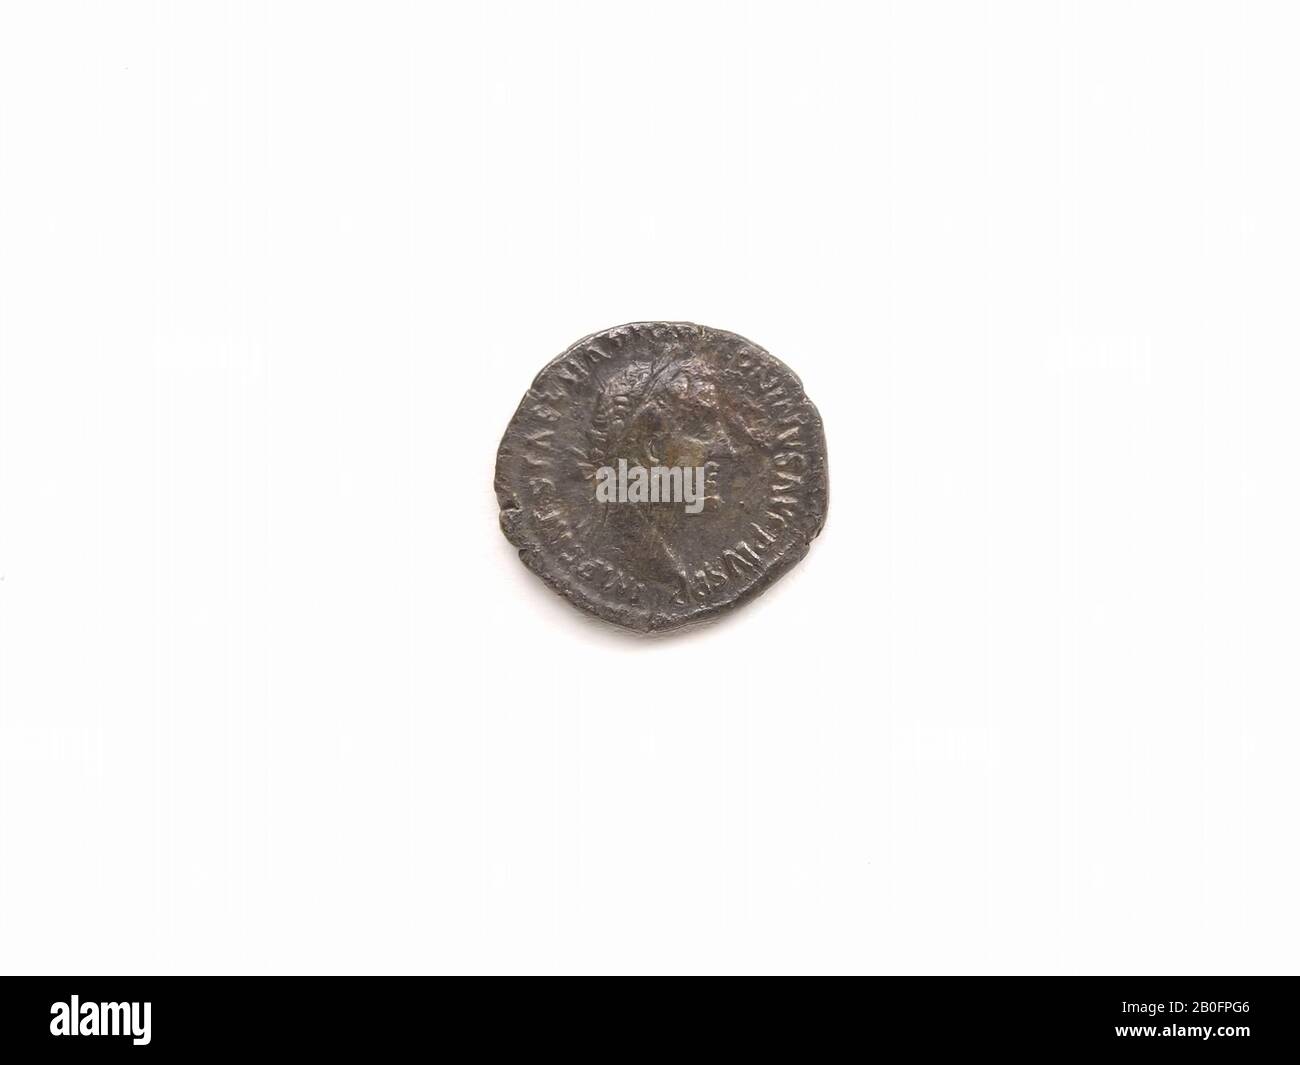 vz. Antonius Pius kz. Pietas BMC 735. Mint was in mouth., Coin, metal, silver, vmeb 150-151, Netherlands, Utrecht, Rhenen, Rhenen, grave 838 Stock Photo